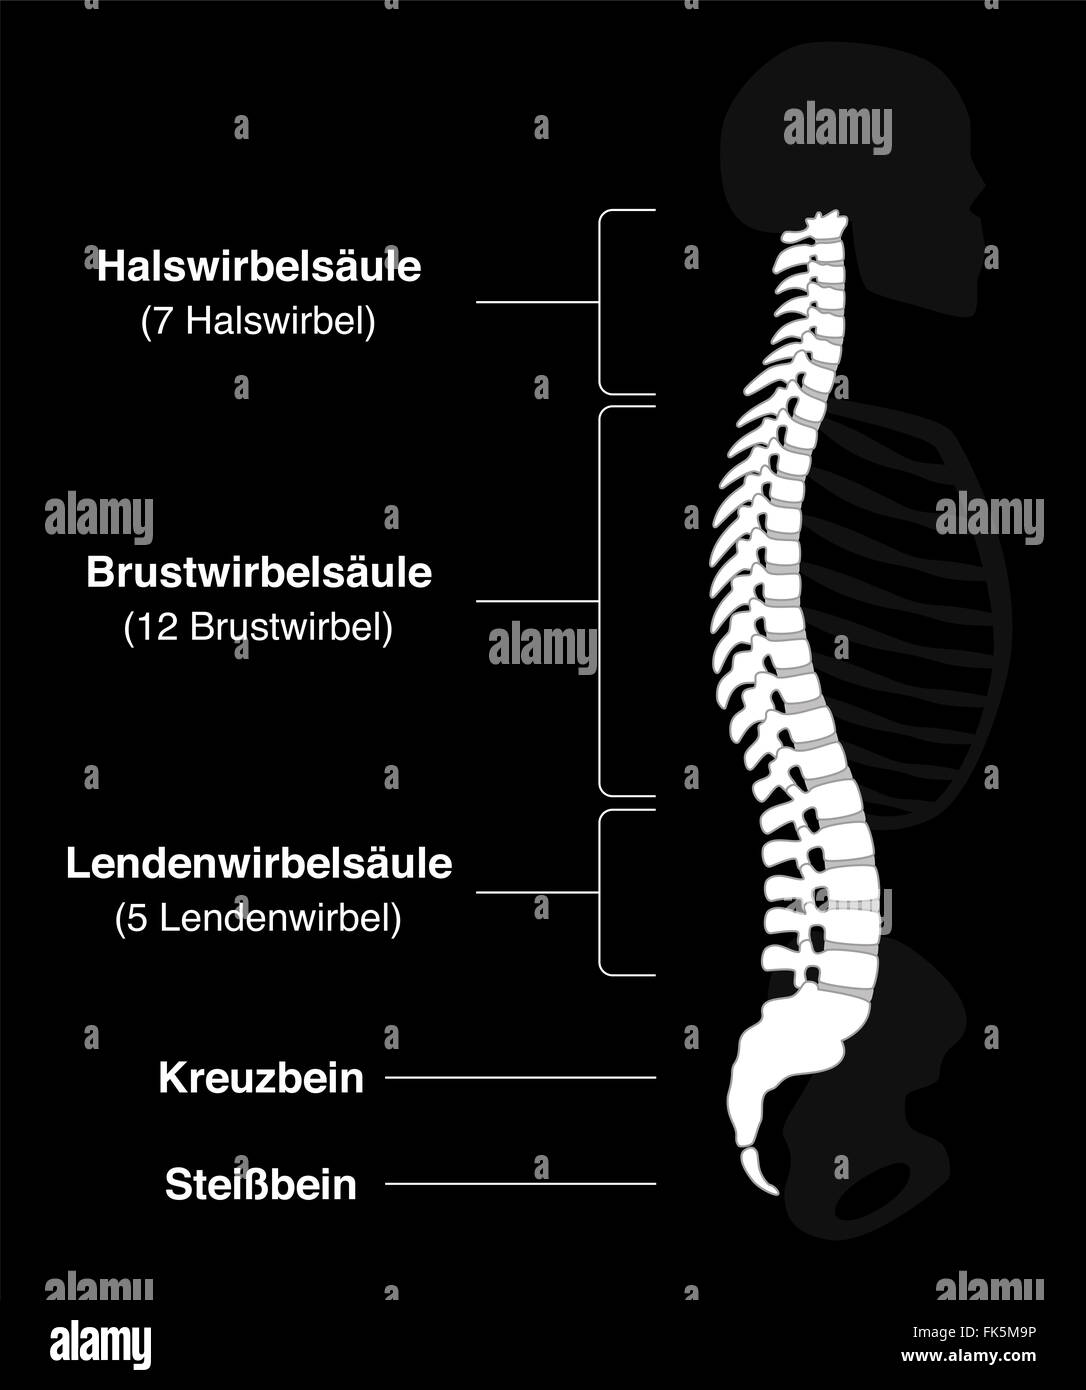 Columna vertebral humana con nombres alemanes de las secciones de la columna vertebral y los números de las vértebras. Foto de stock